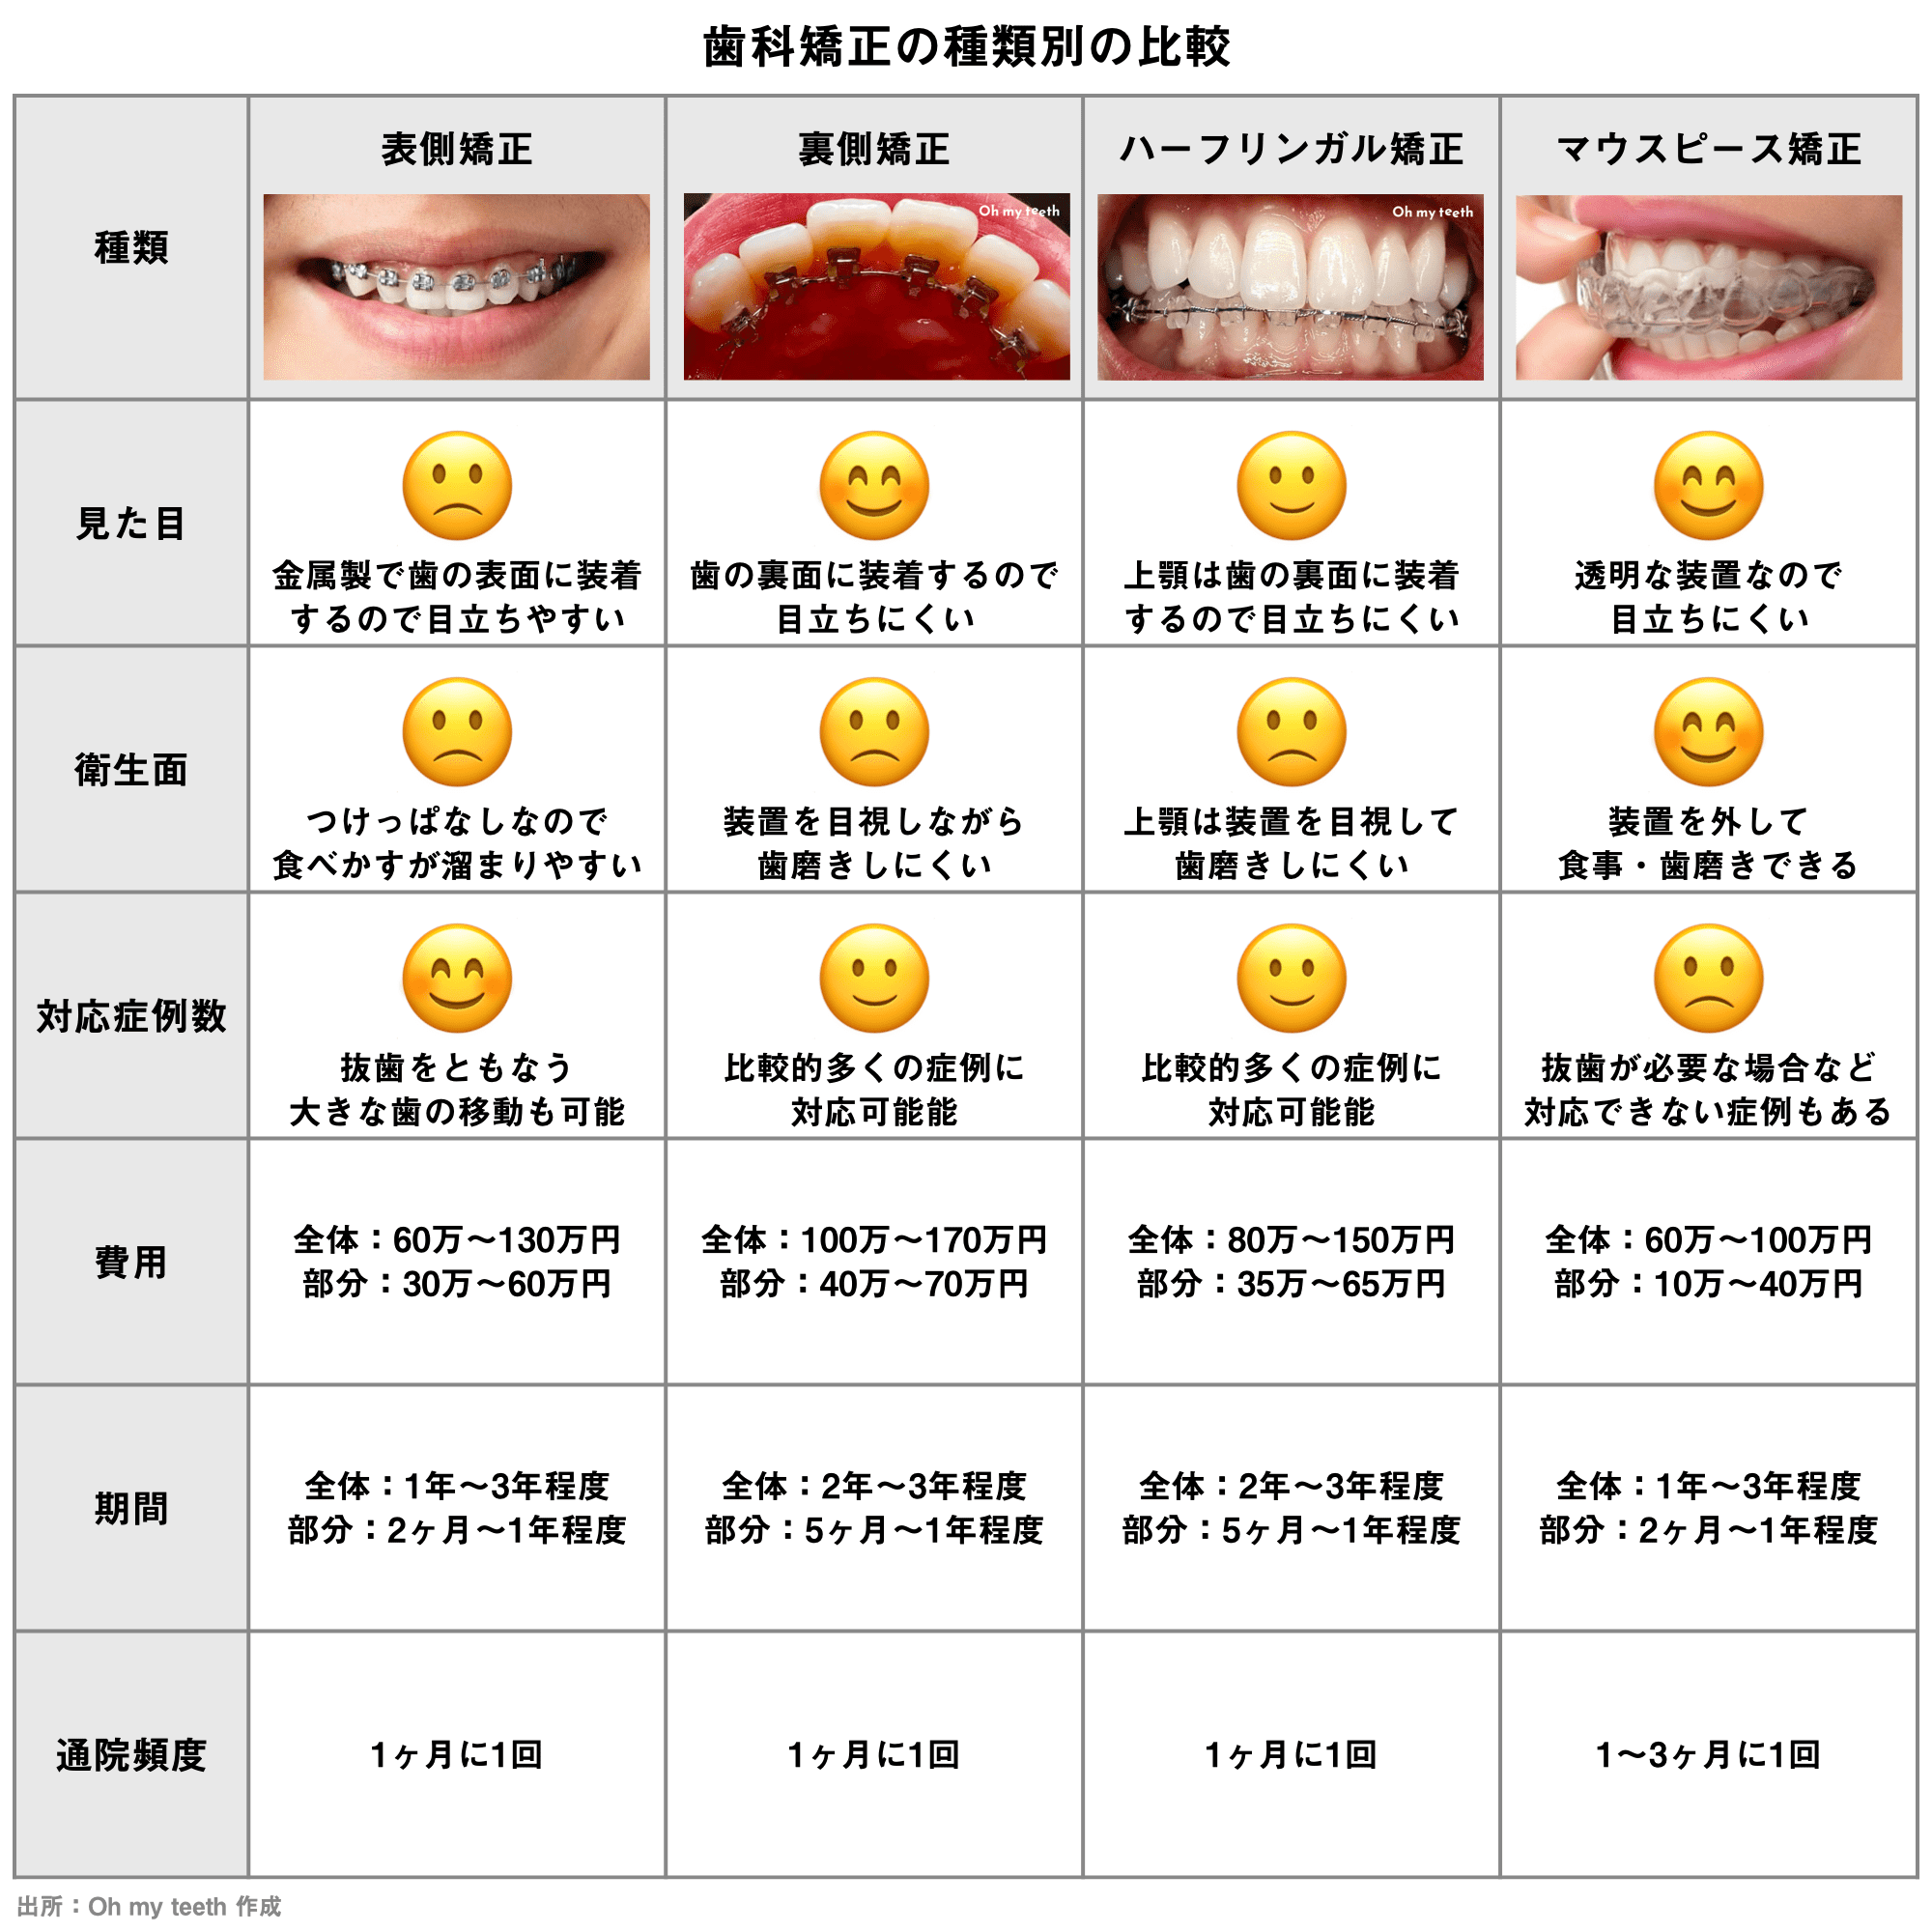 歯科矯正方法をまとめた表